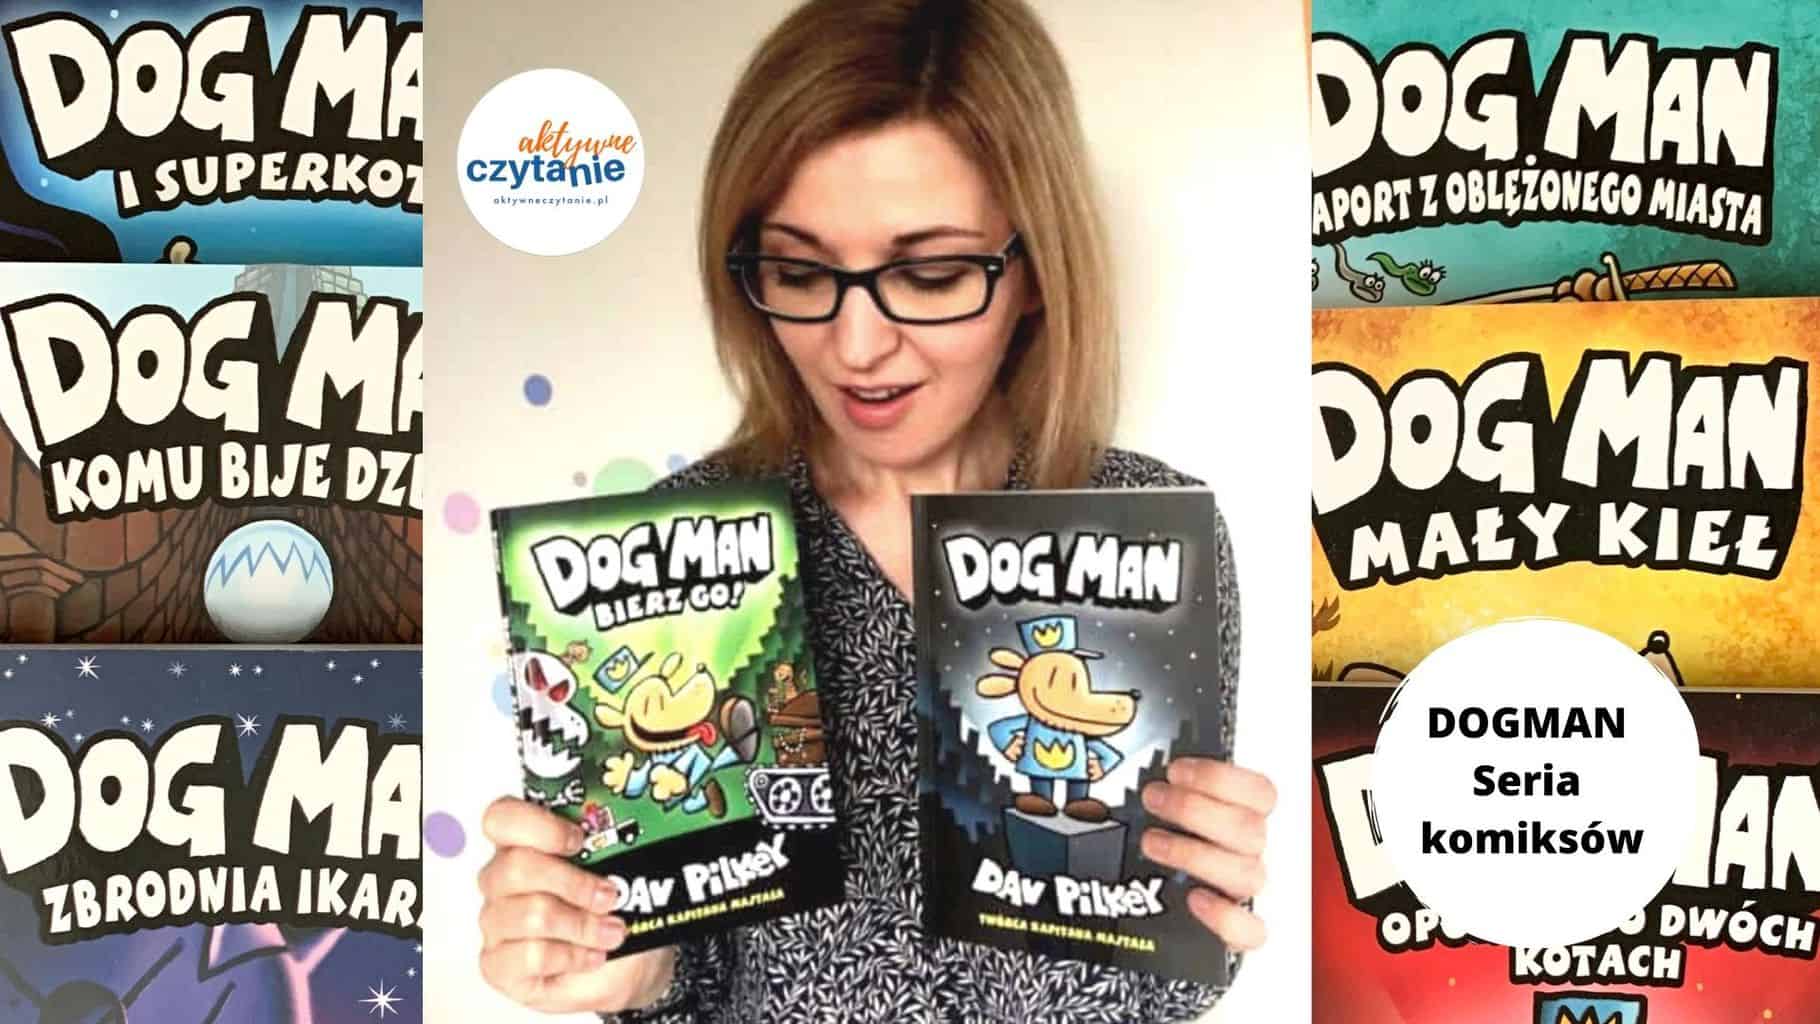 dogman seria komiksow dla dzieci recenzja